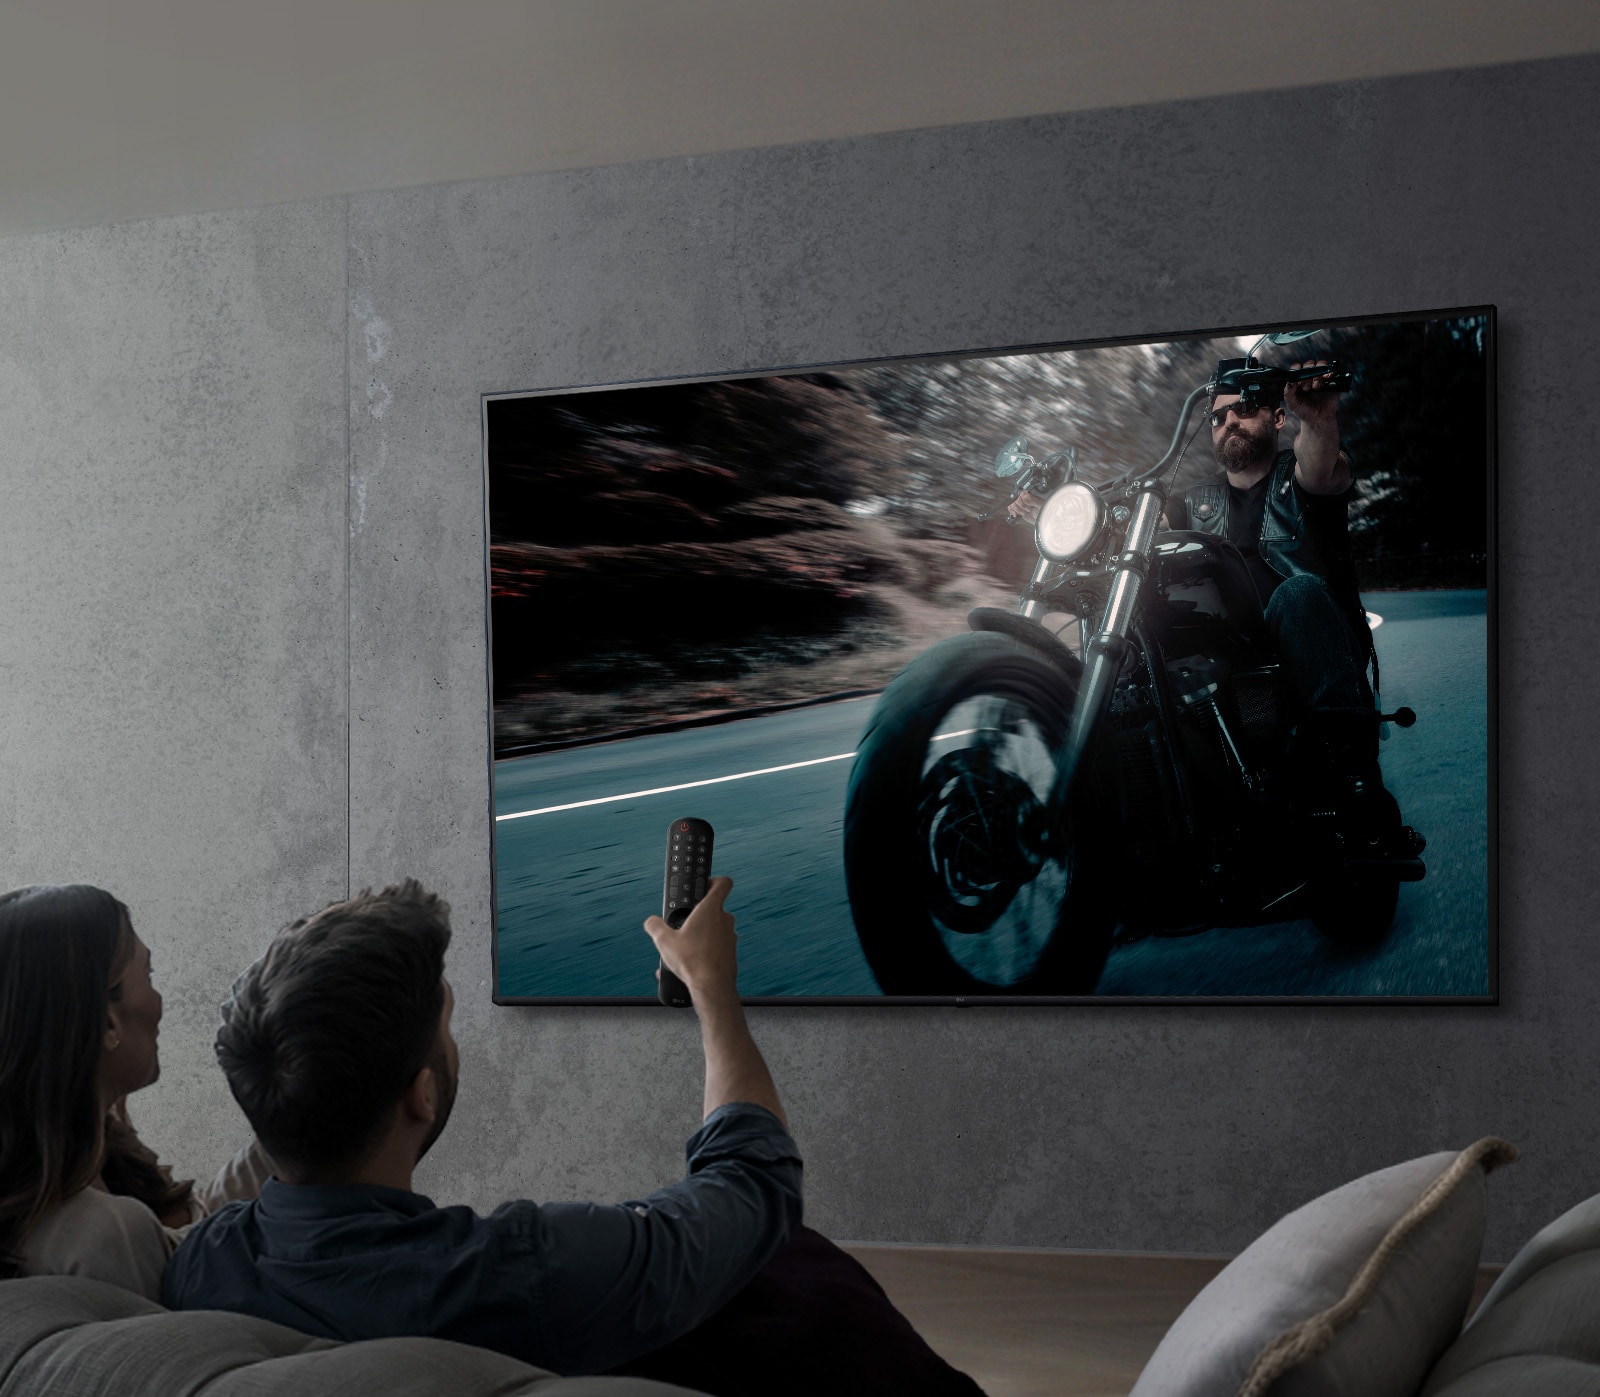 صورة يظهر فيها شخصان يشاهدان عرضًا على شاشة تلفاز UHD من LG.